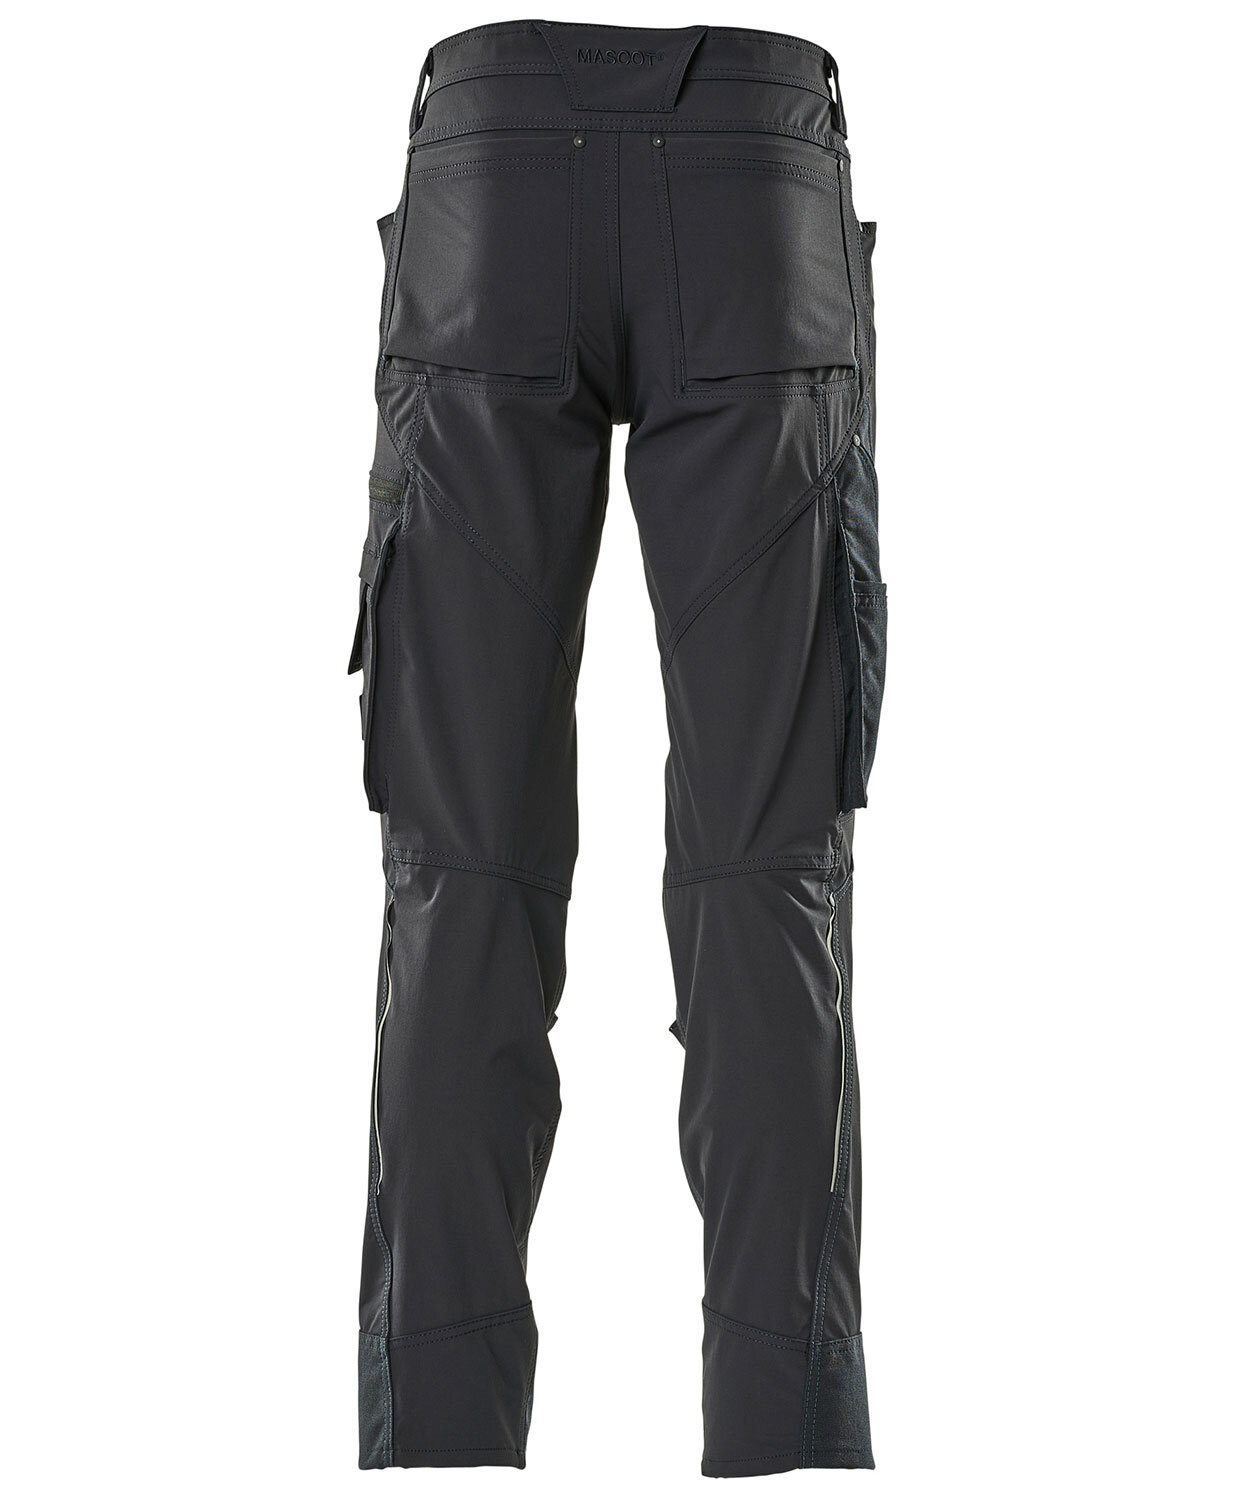 NEW Mascot Grafton Black Combat Work Originals Trousers Pants J4 GRA1 